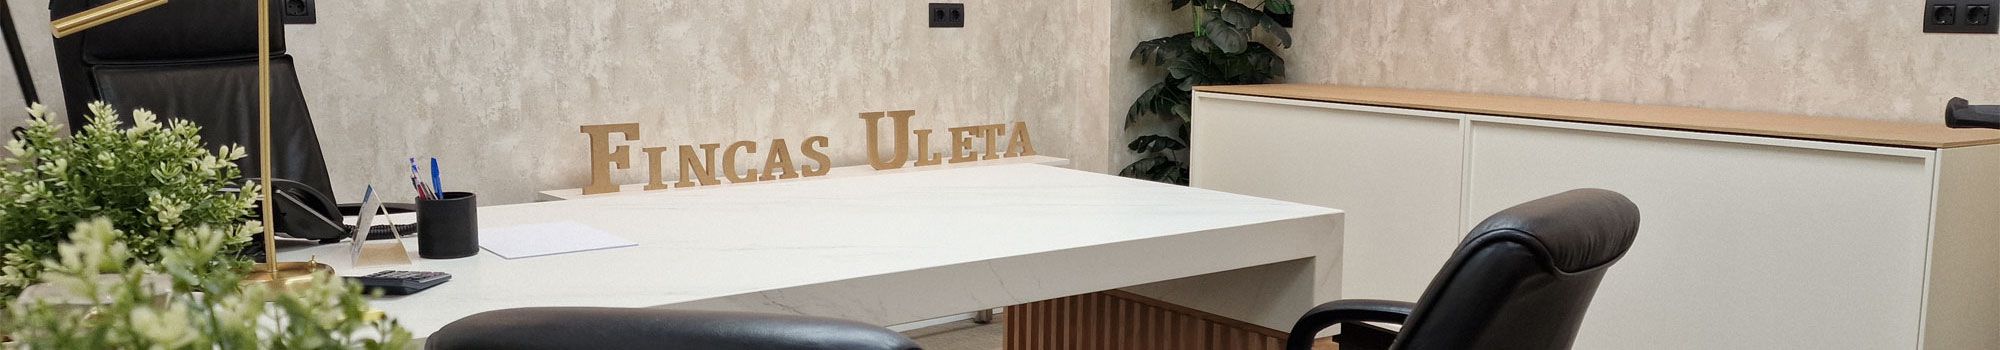 Fincas Uleta, Agencia Inmobiliaria desde 1999 . Fincas Uleta en Vitoria-Gasteiz